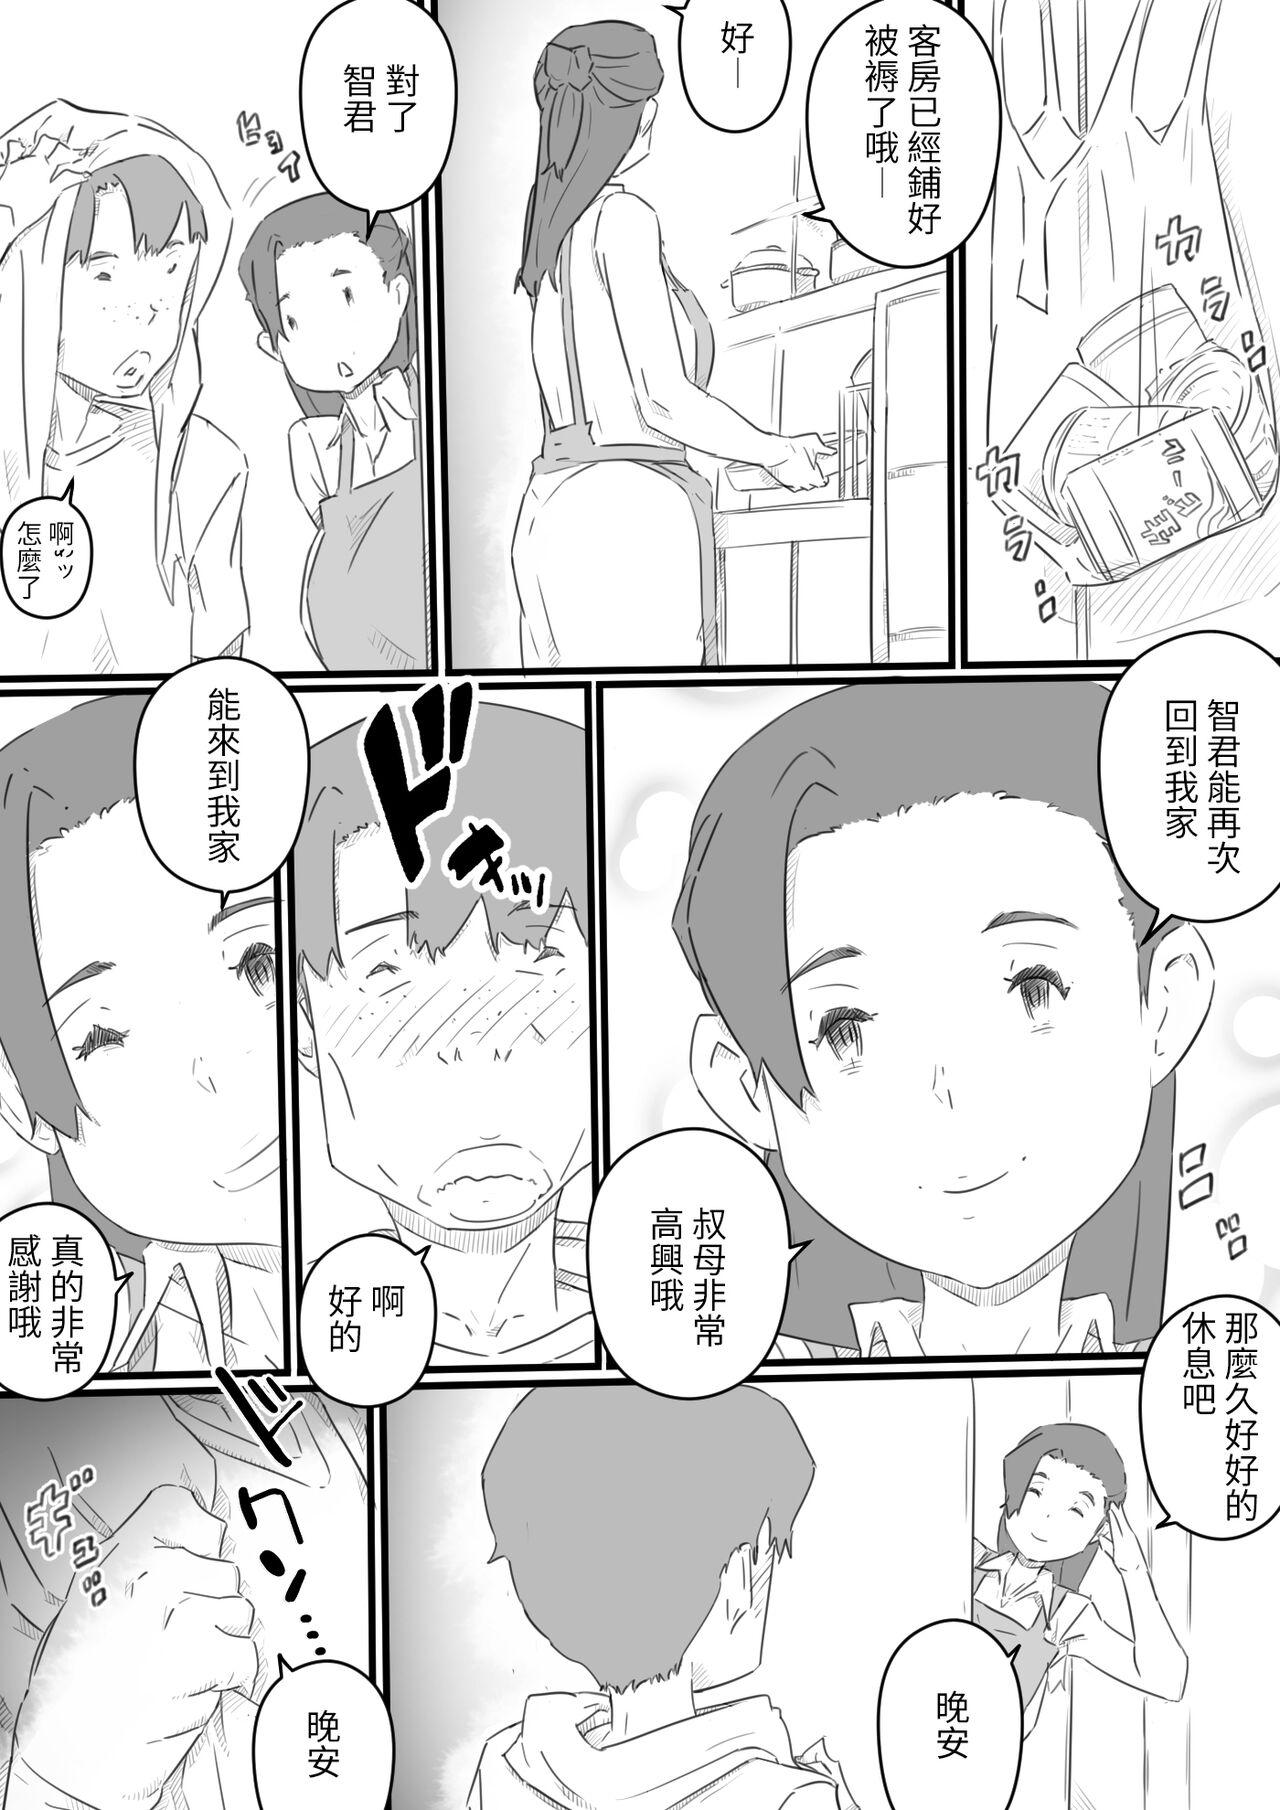 Spooning hi ki komo ri no oi xtu ko to三 nin no hitozuma‐ hito natu no omo i de…‐ Nuru Massage - Page 8